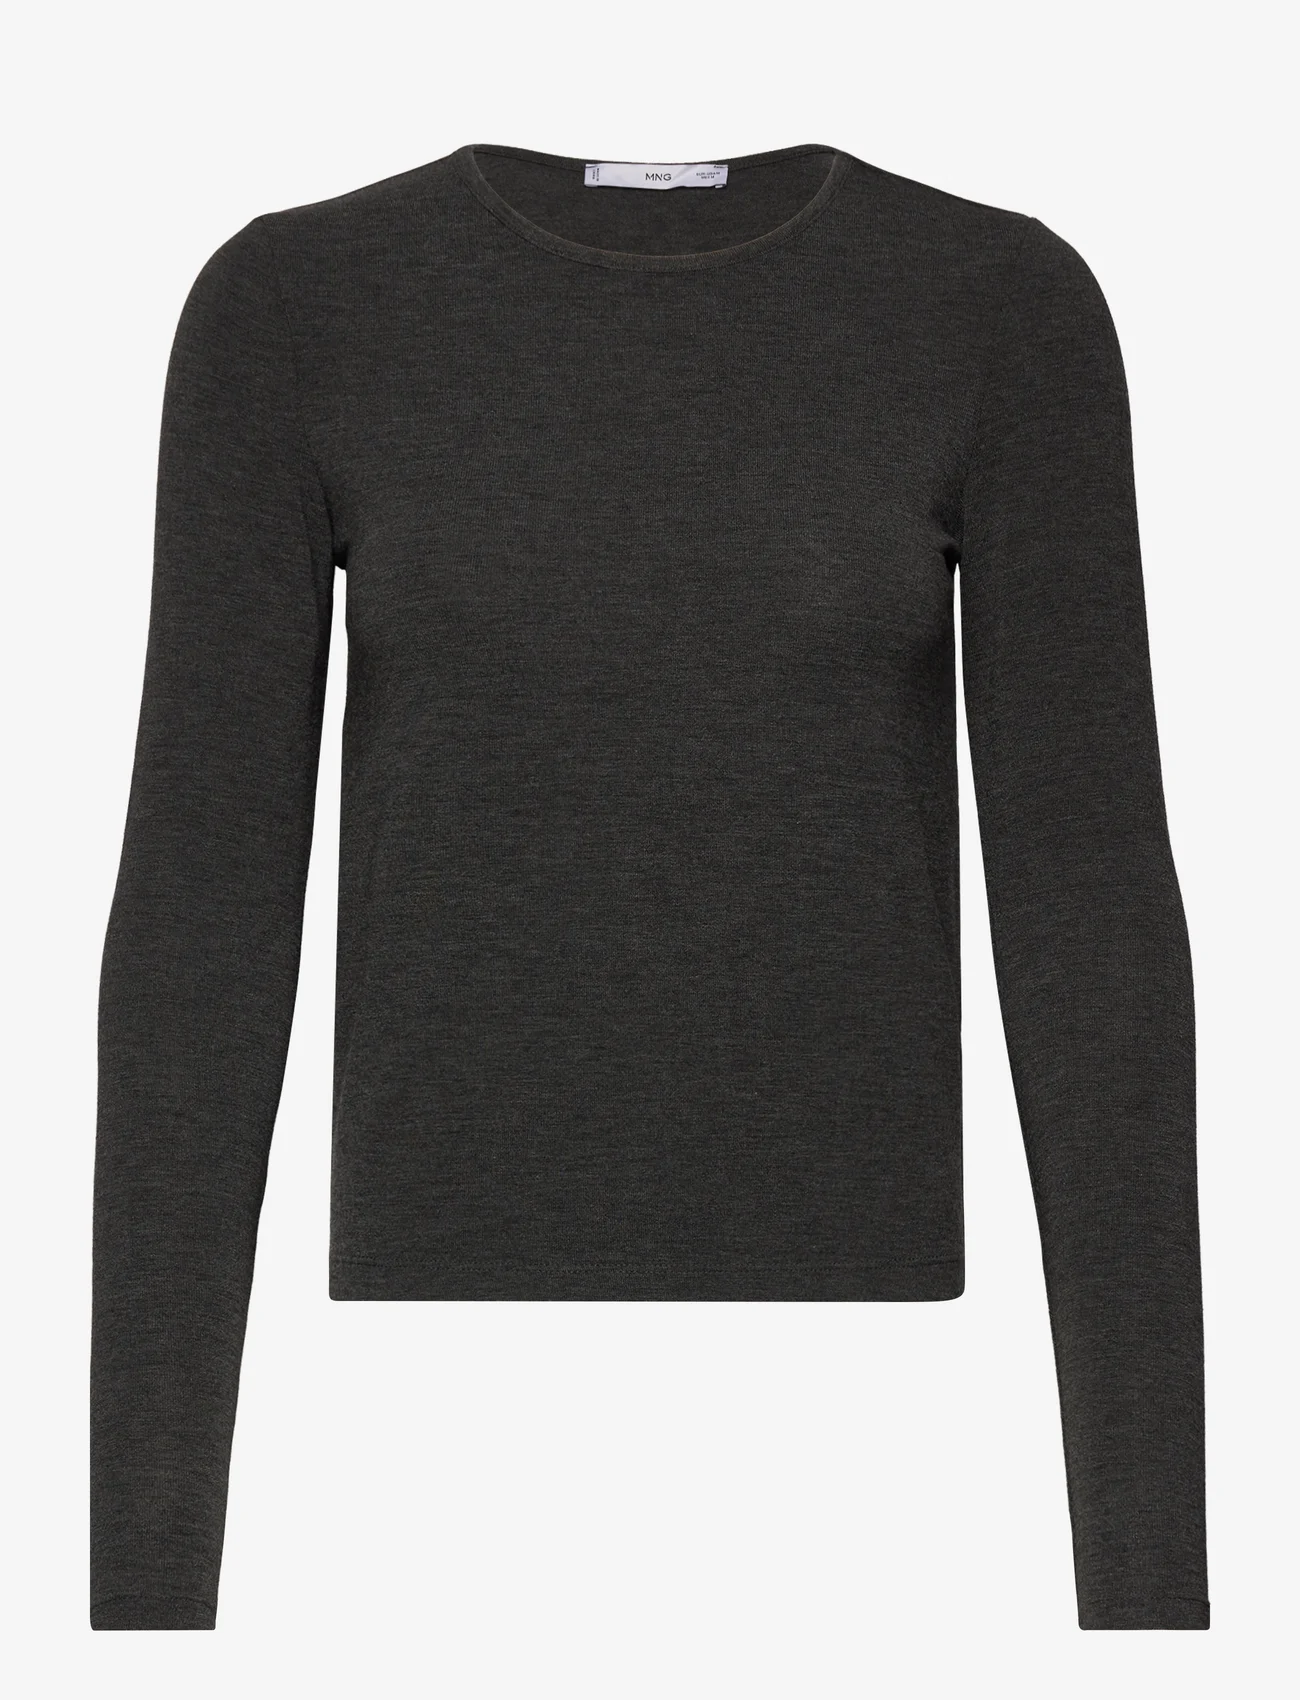 Mango - Round neck knit t-shirt - laveste priser - dark grey - 0